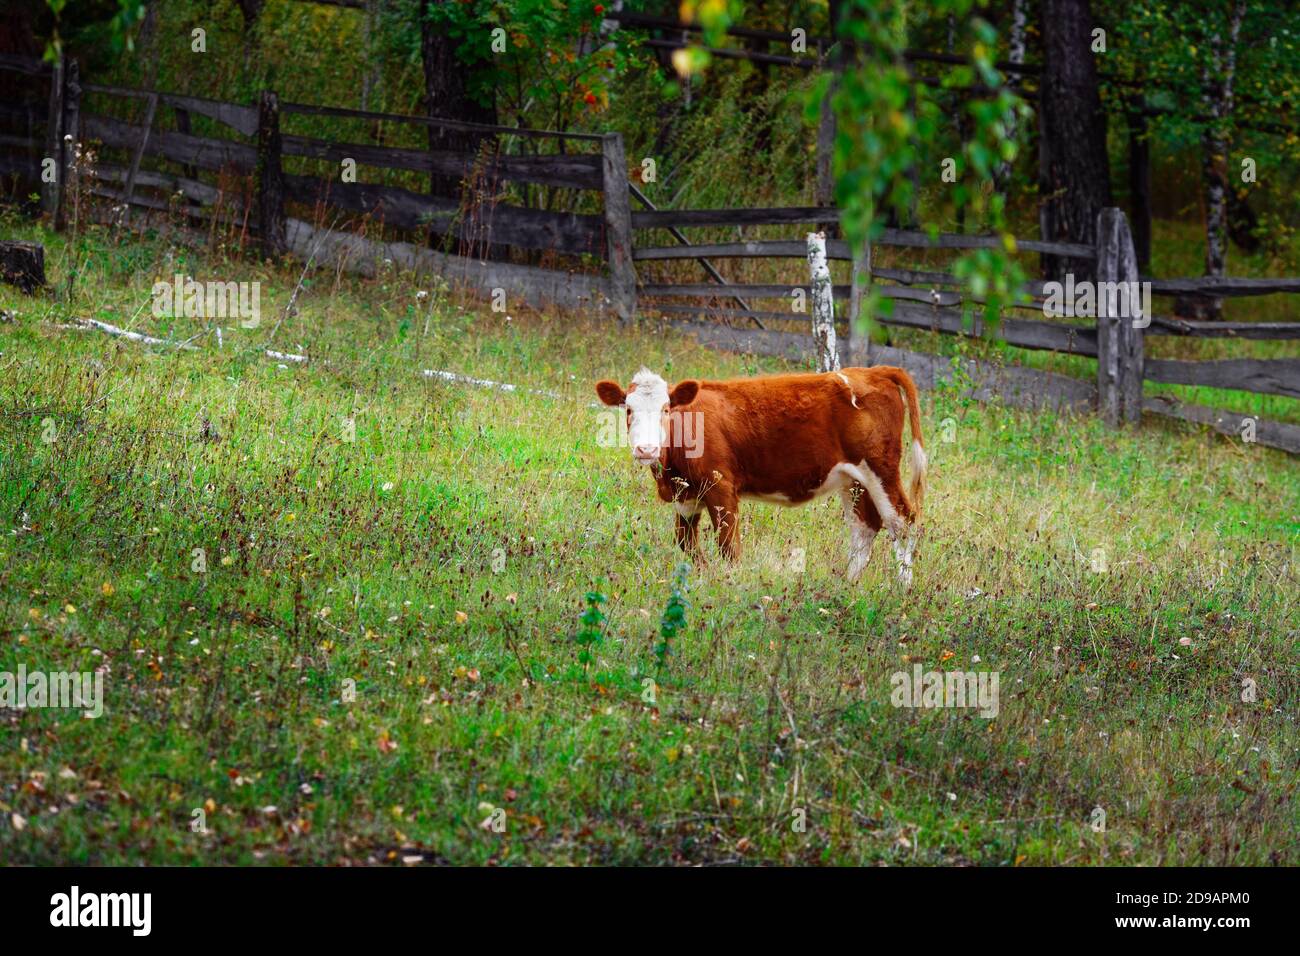 Un jeune veau rouge se tient sur un pré vert. Élevage de bovins sur la ferme Banque D'Images